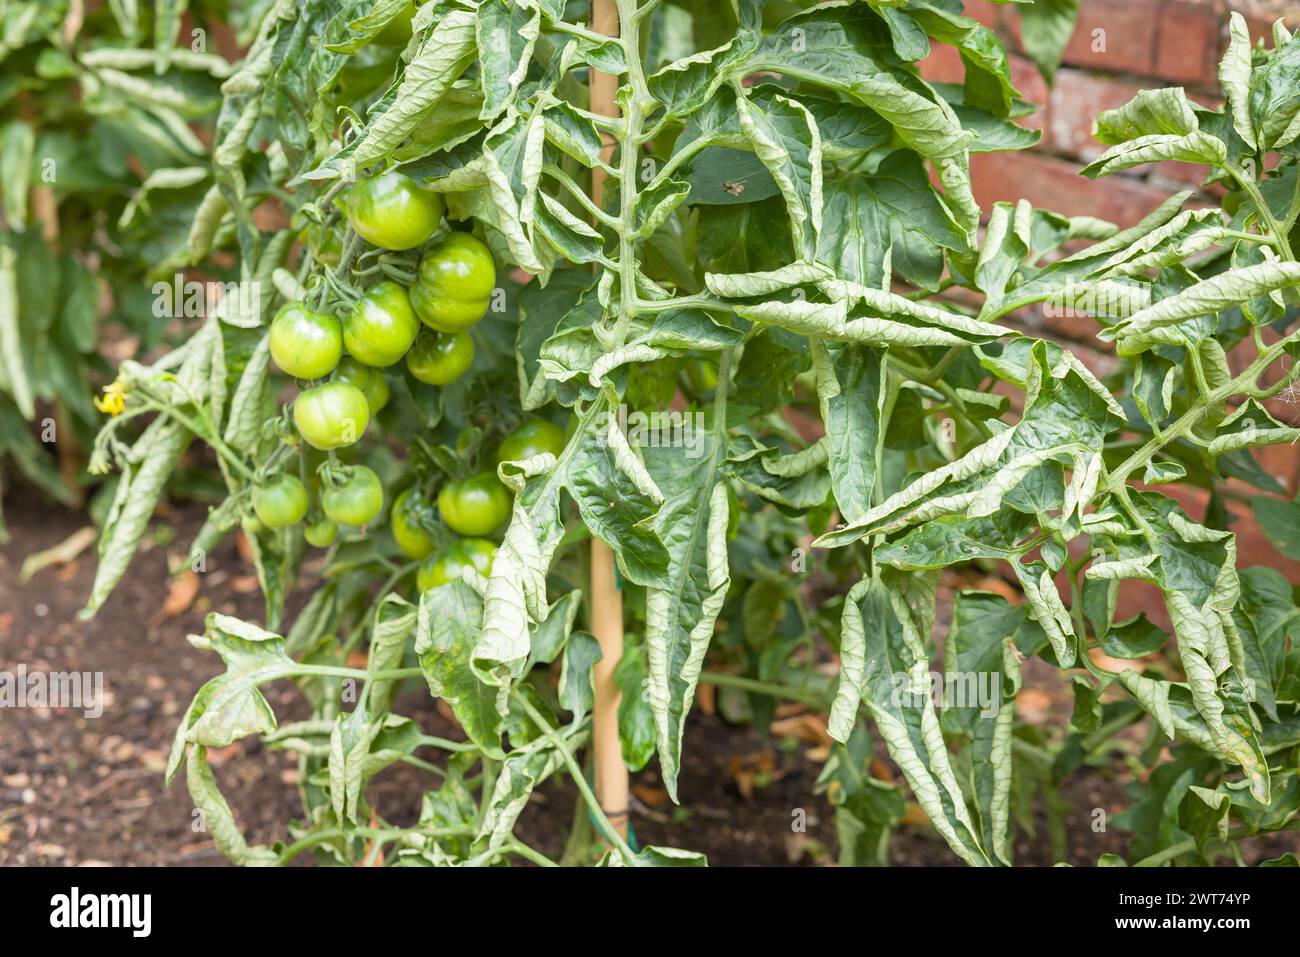 Nahaufnahme von gerollten Blättern an Tomatenpflanzen in einem Gemüsepflaster. Tomatenblatt-Curl, ein häufiges Problem in britischen Gärten. Stockfoto